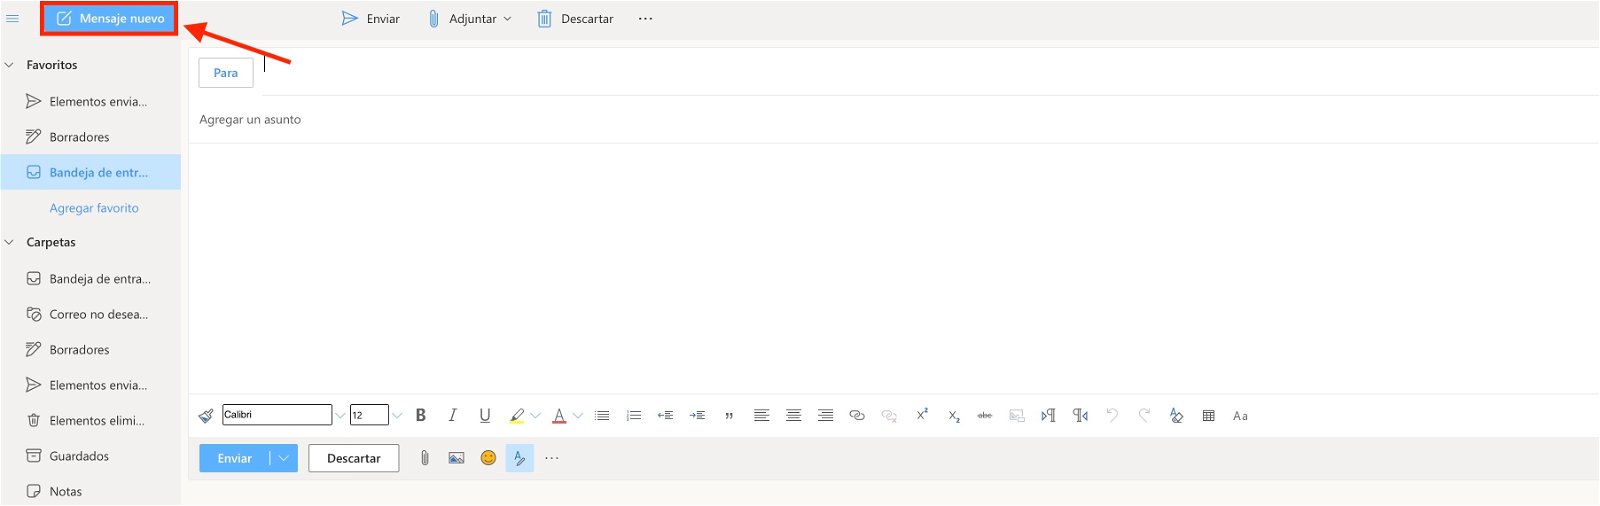 Cómo programar correos en Outlook: hazlo paso a paso